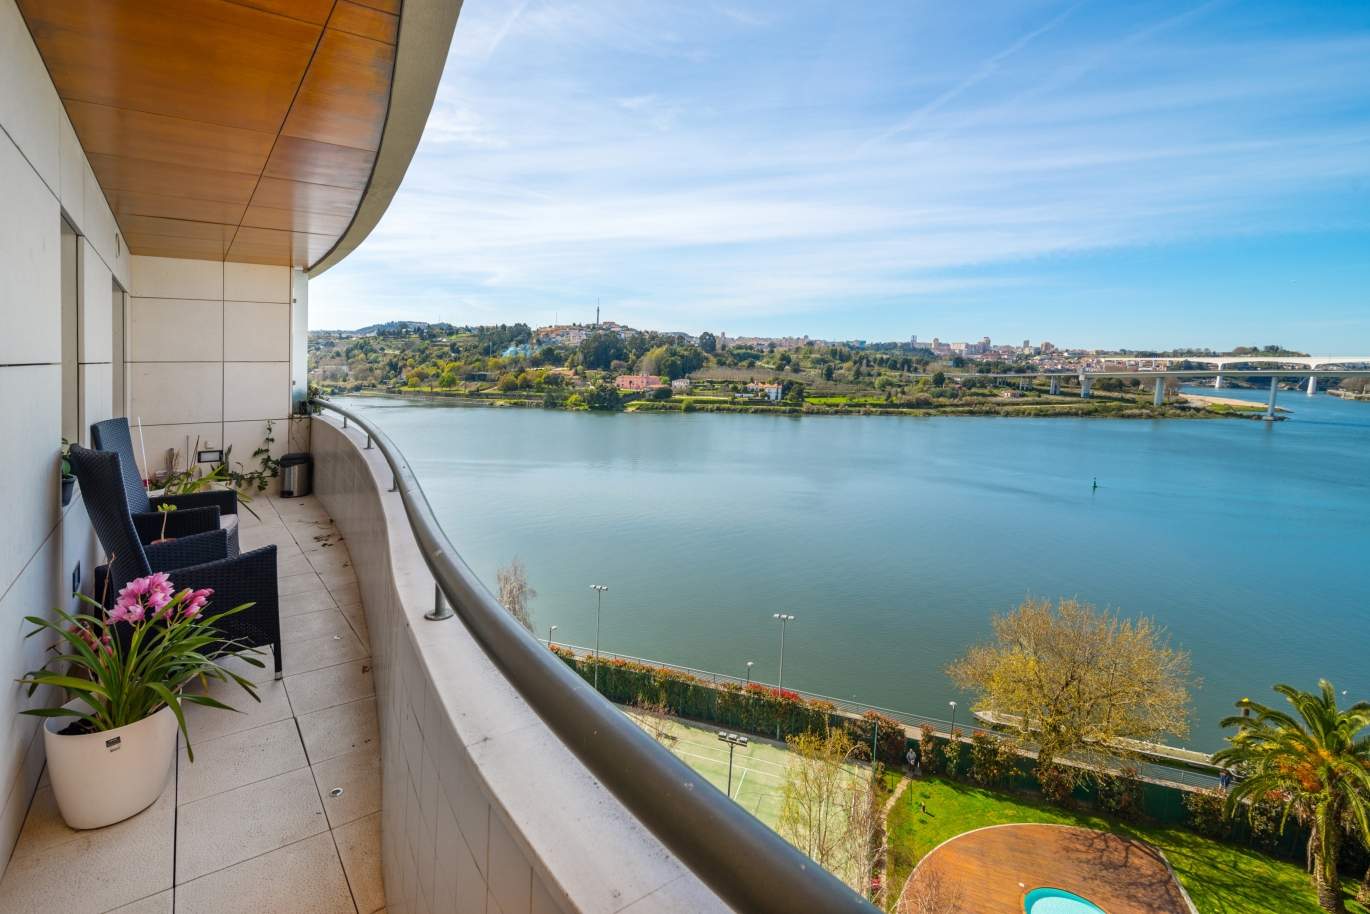 Venda apartamento com vistas rio, condomínio de luxo, Porto, Portugal_99613